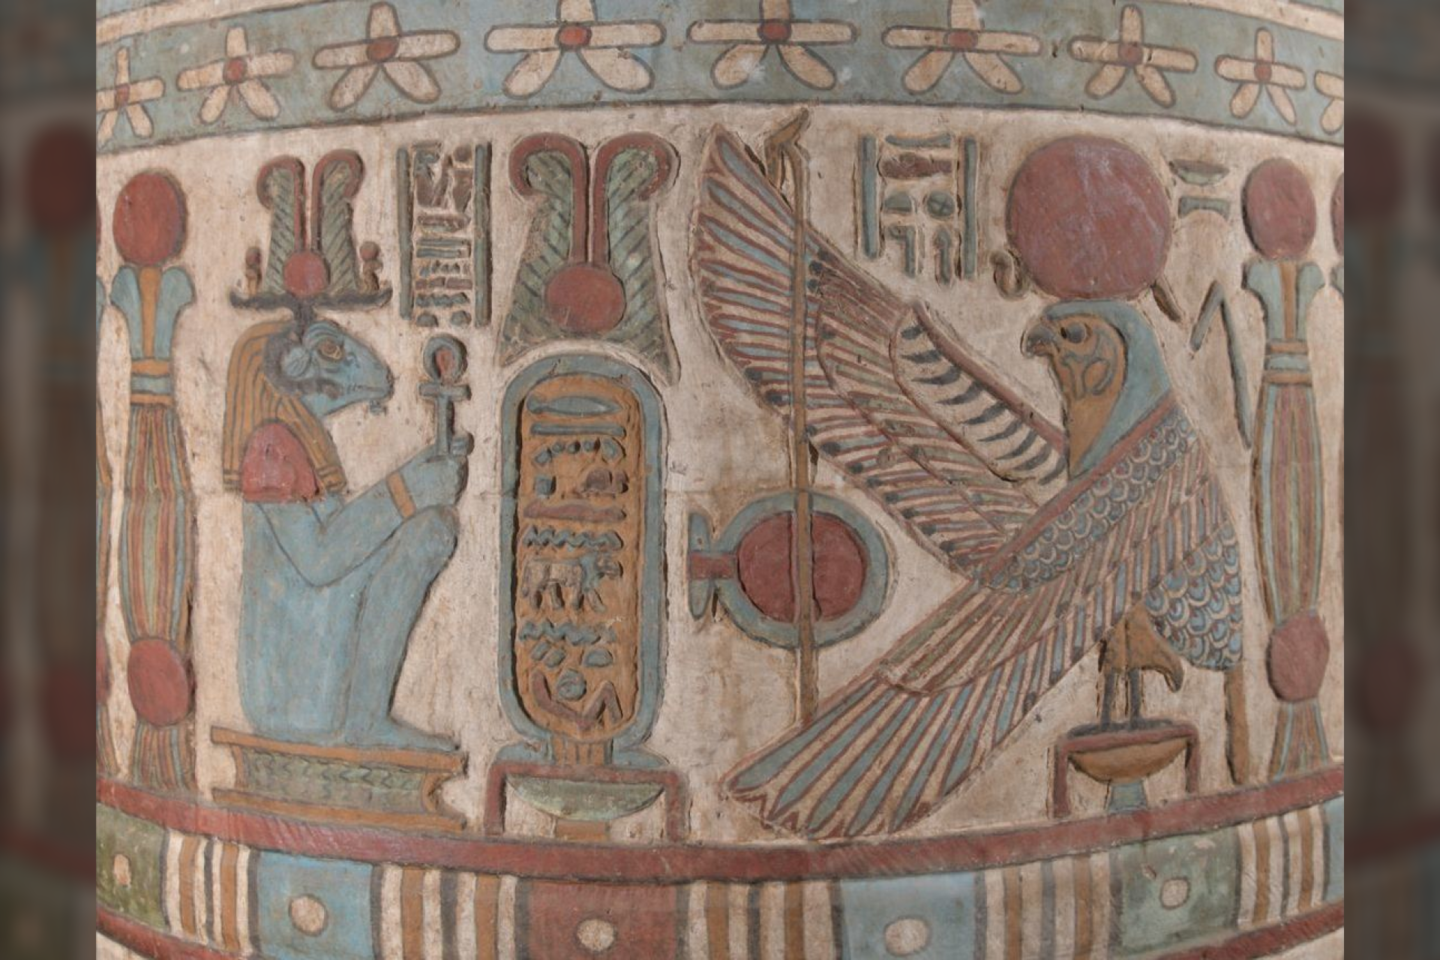  Hadriano vardas, įrėmintas vietiniu dievu Khnumu (kairėje) ir saulės dievu Behedeti.<br> Ahmedo Amino nuotr.